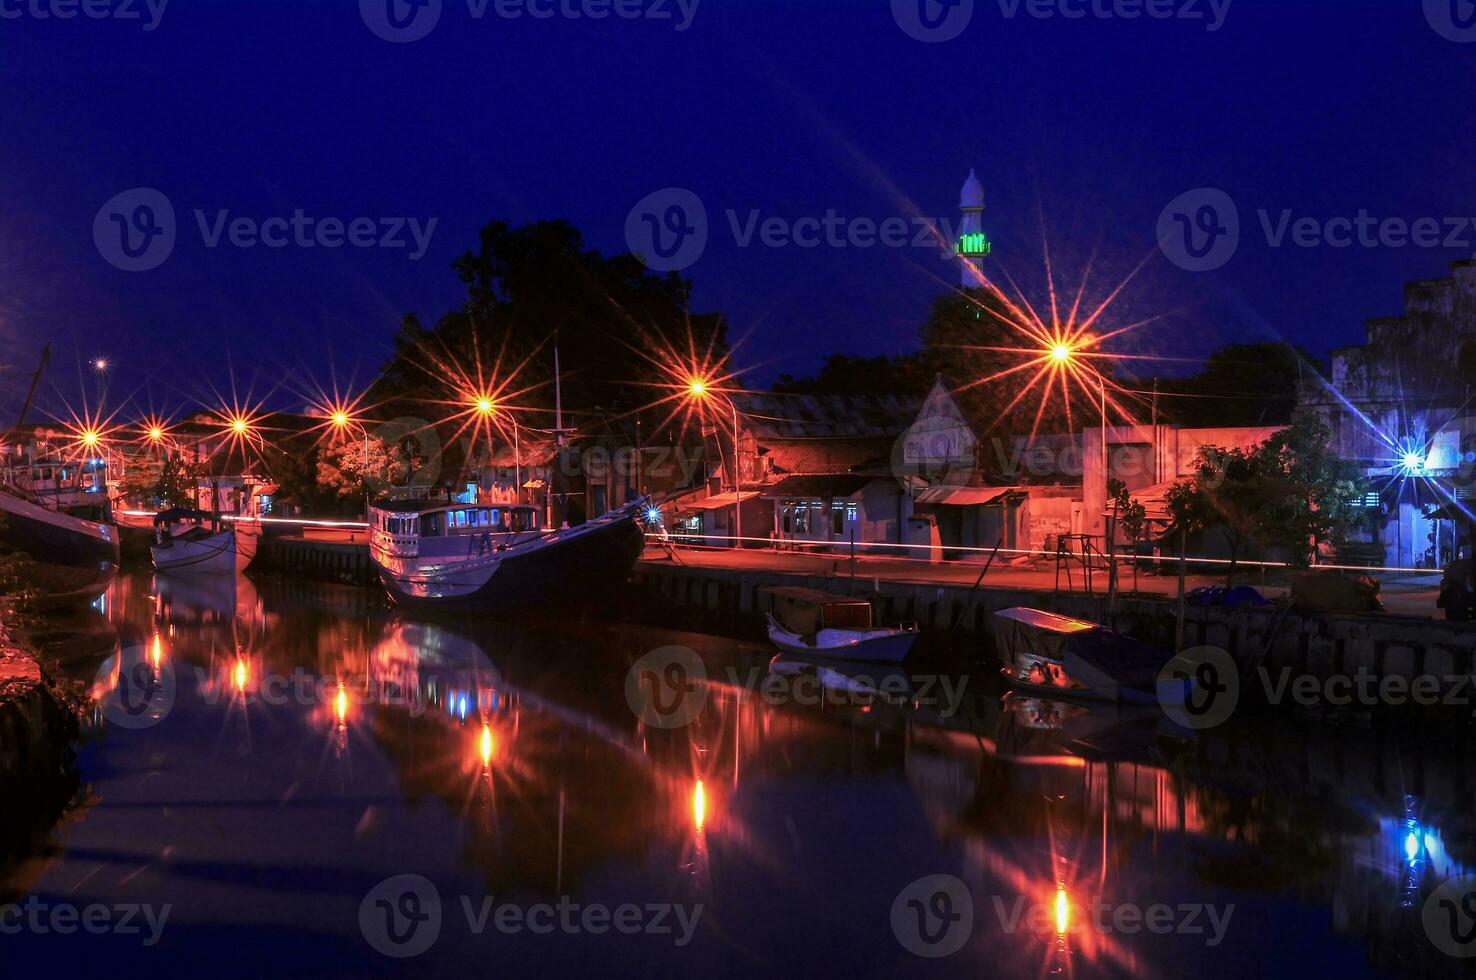 rio acima do a rio às pasuruan Porto dentro Indonésia, muitos pescaria barcos doca às noite foto